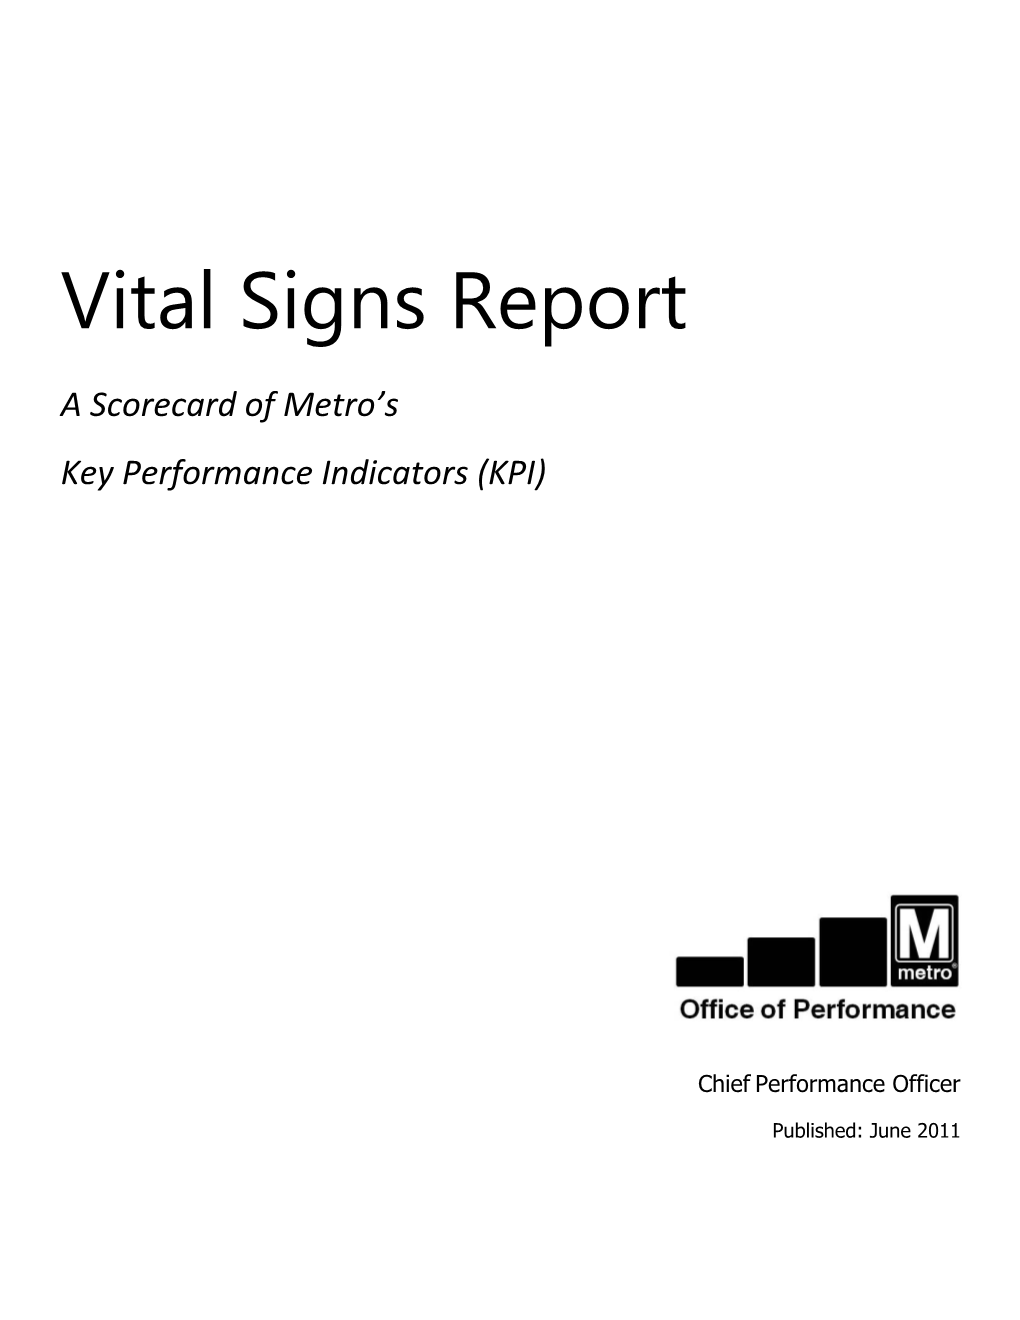 Metro Vital Signs Report June 2011